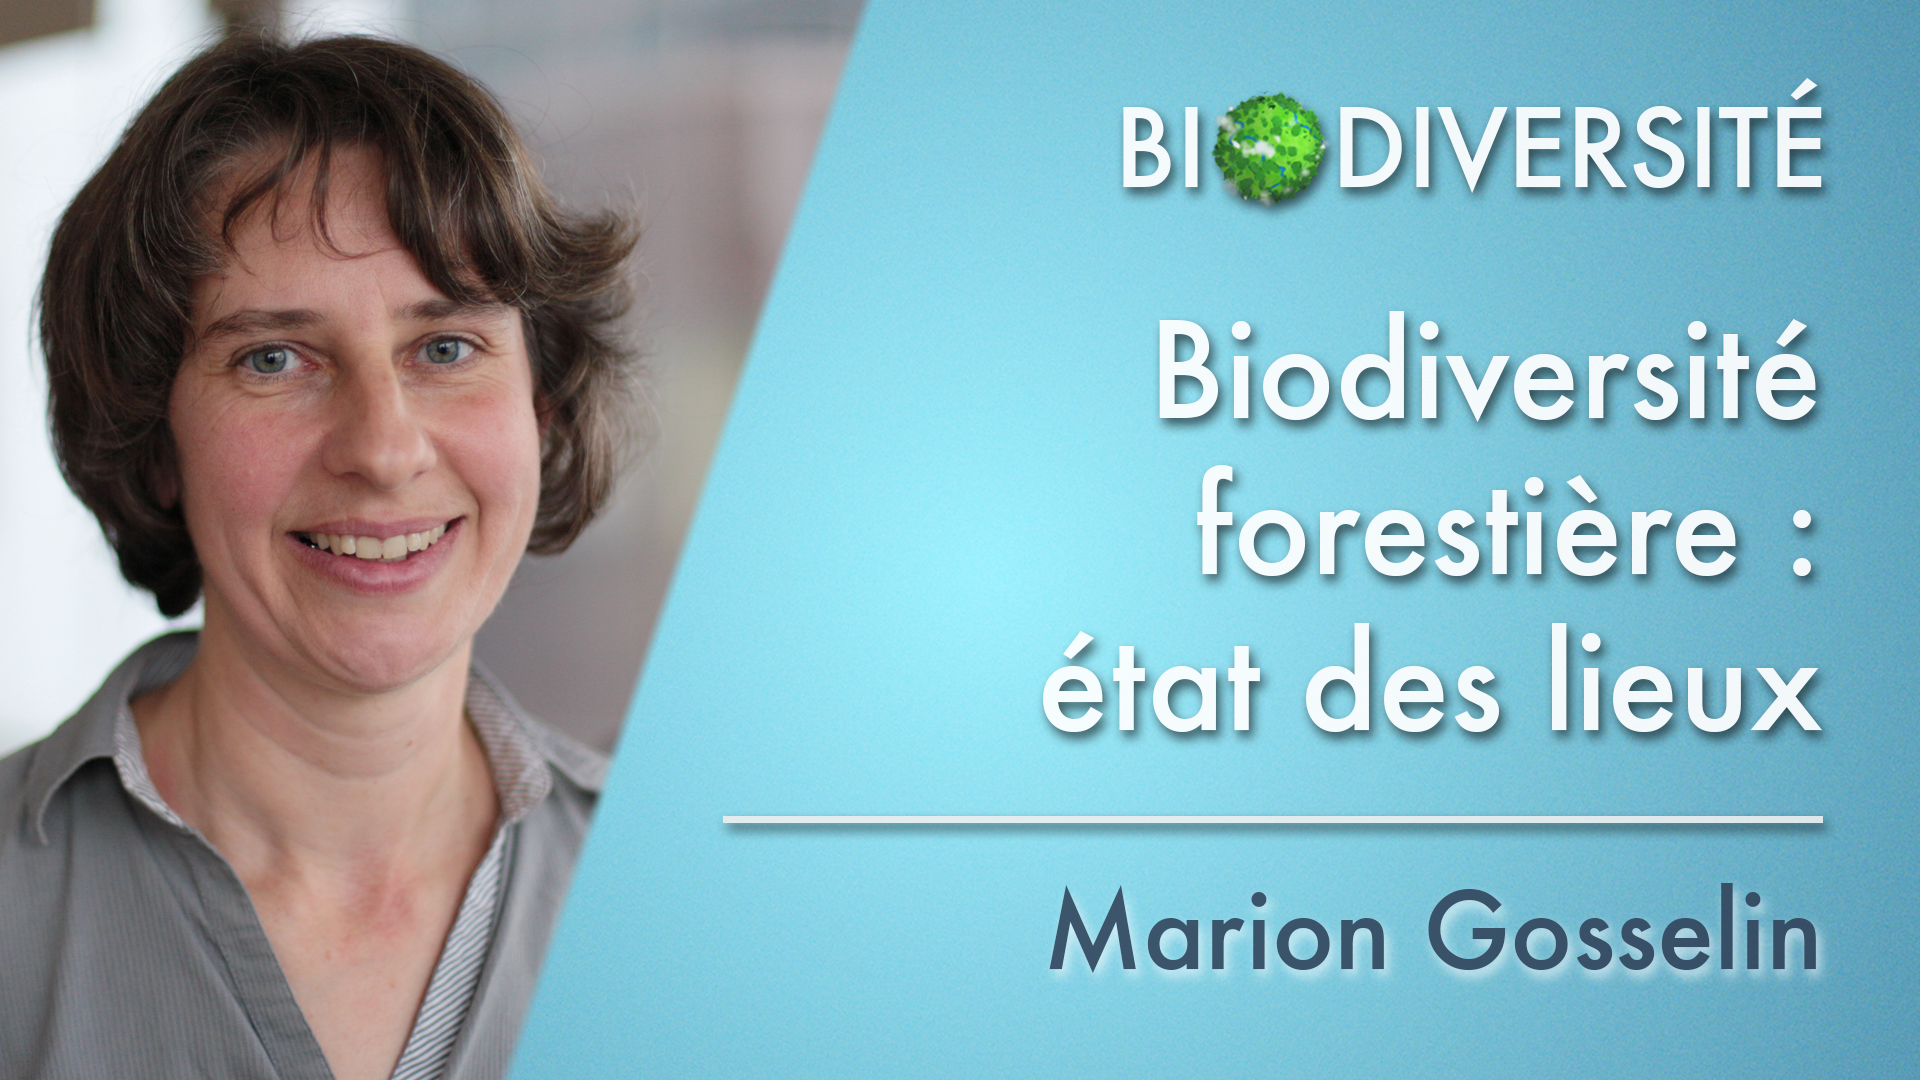 5. Biodiversité forestière : état des lieux